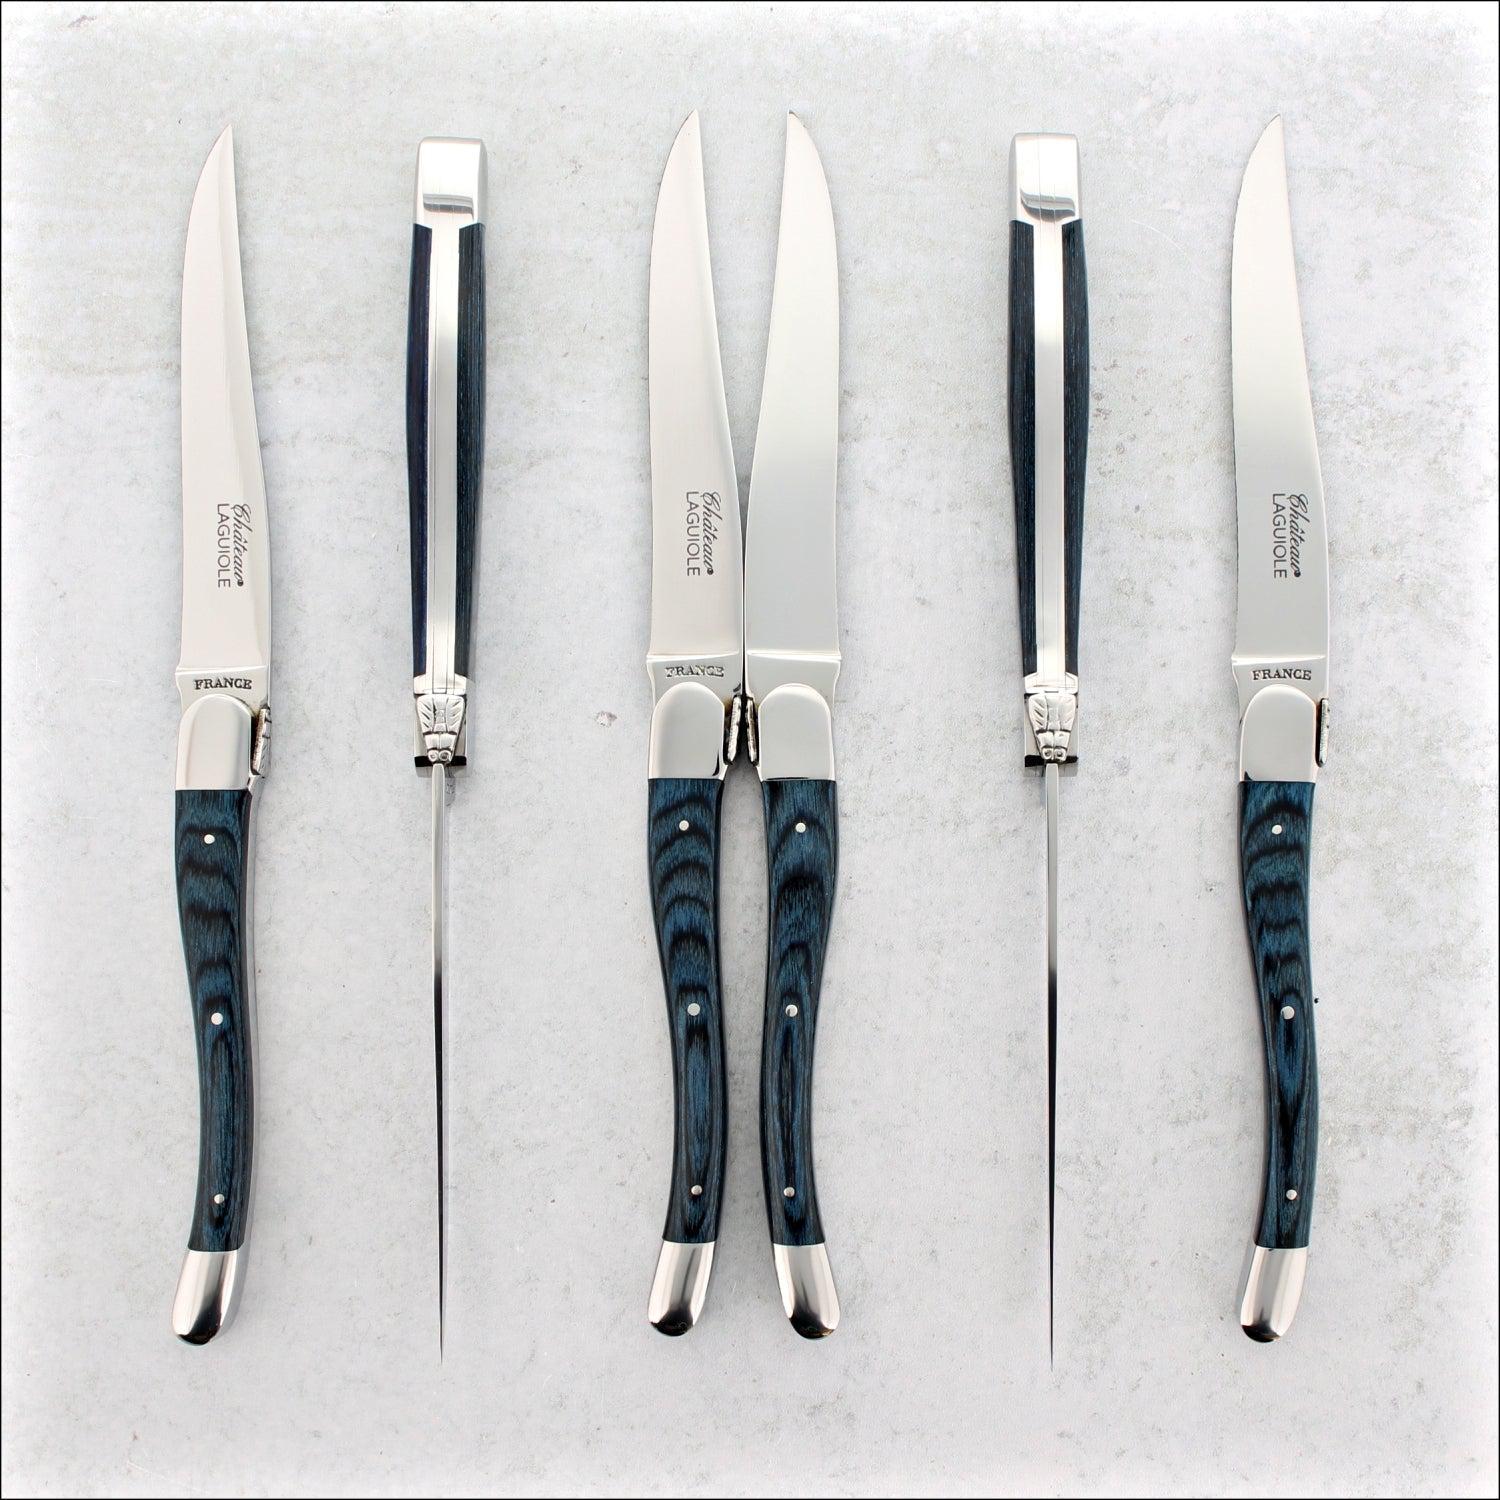 Steak Knives Set of 4 - Premium Stainless Steel, Dishwasher Safe - Polished  Shiny Blade & Handle, Kitchen Table Knife Set Dinner Knives 